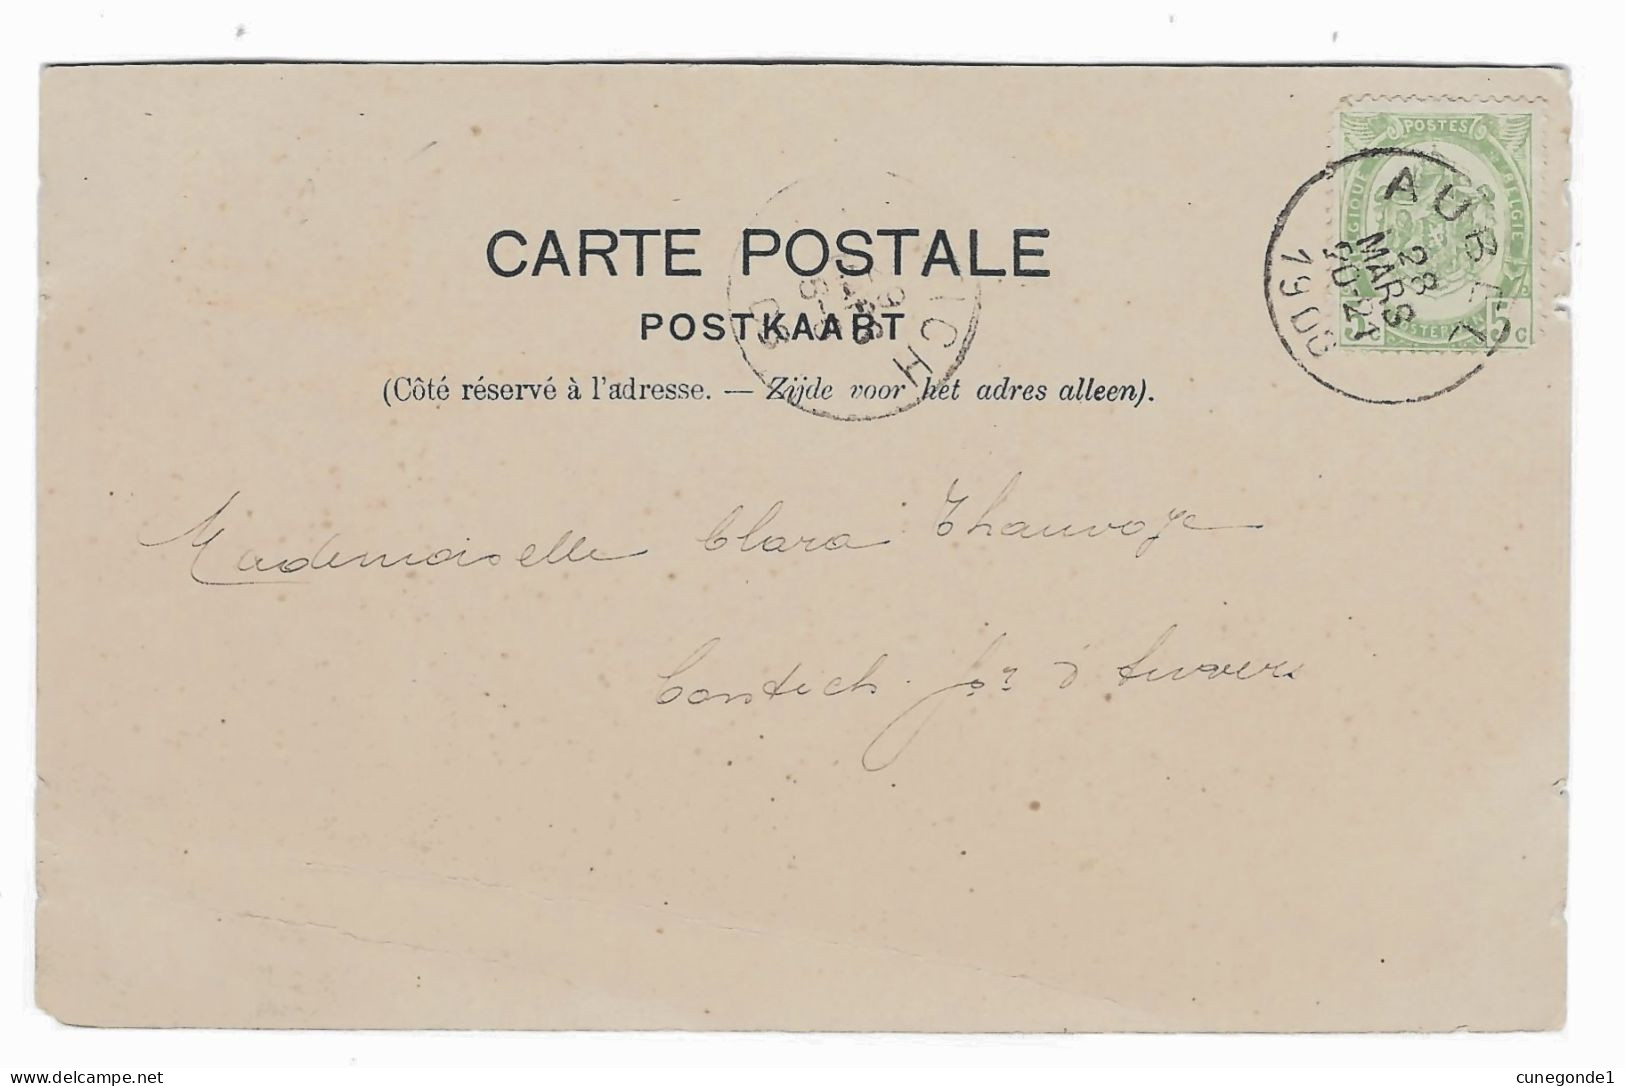 CPA AUBEL : Place De La Foire - Bien Animée Et Circulée 1903 - Edit. Alphonse Willems, Aubel - 2 Scans - Aubel